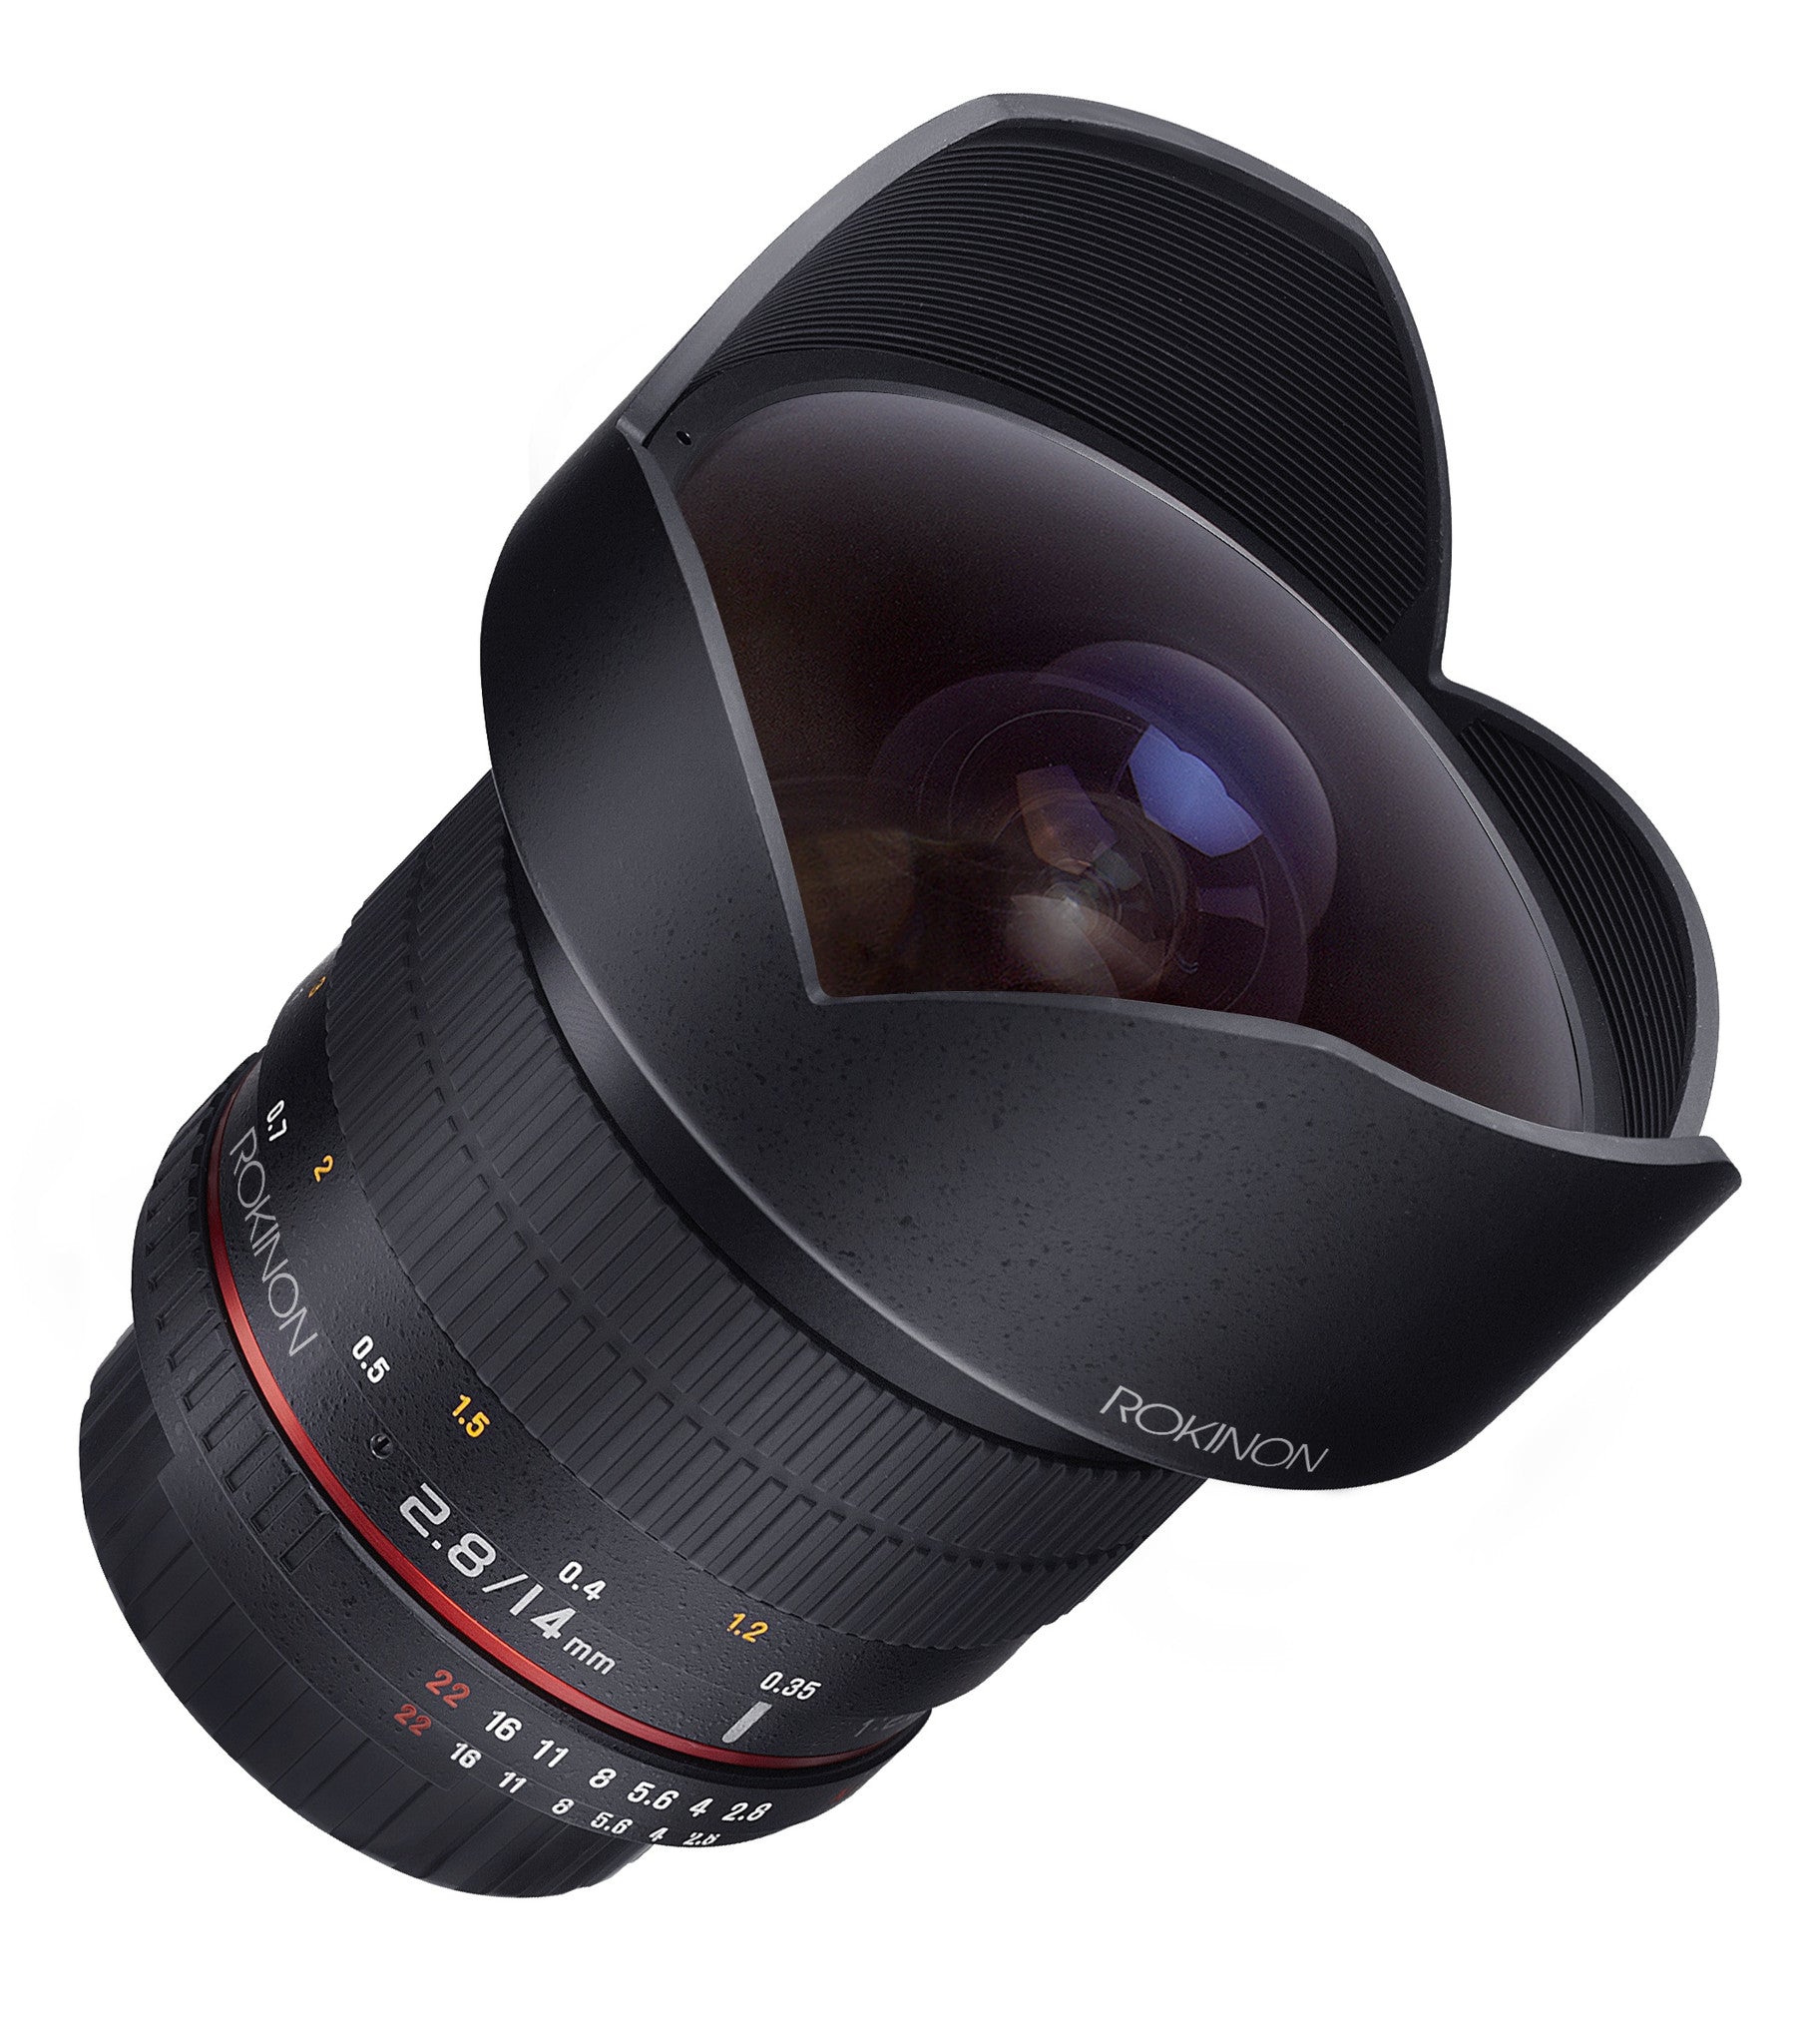 Rokinon 14mm Ultra Wide Angle f2/8 IF ED UMC Lens for Canon, lenses slr lenses, Rokinon - Pictureline  - 2